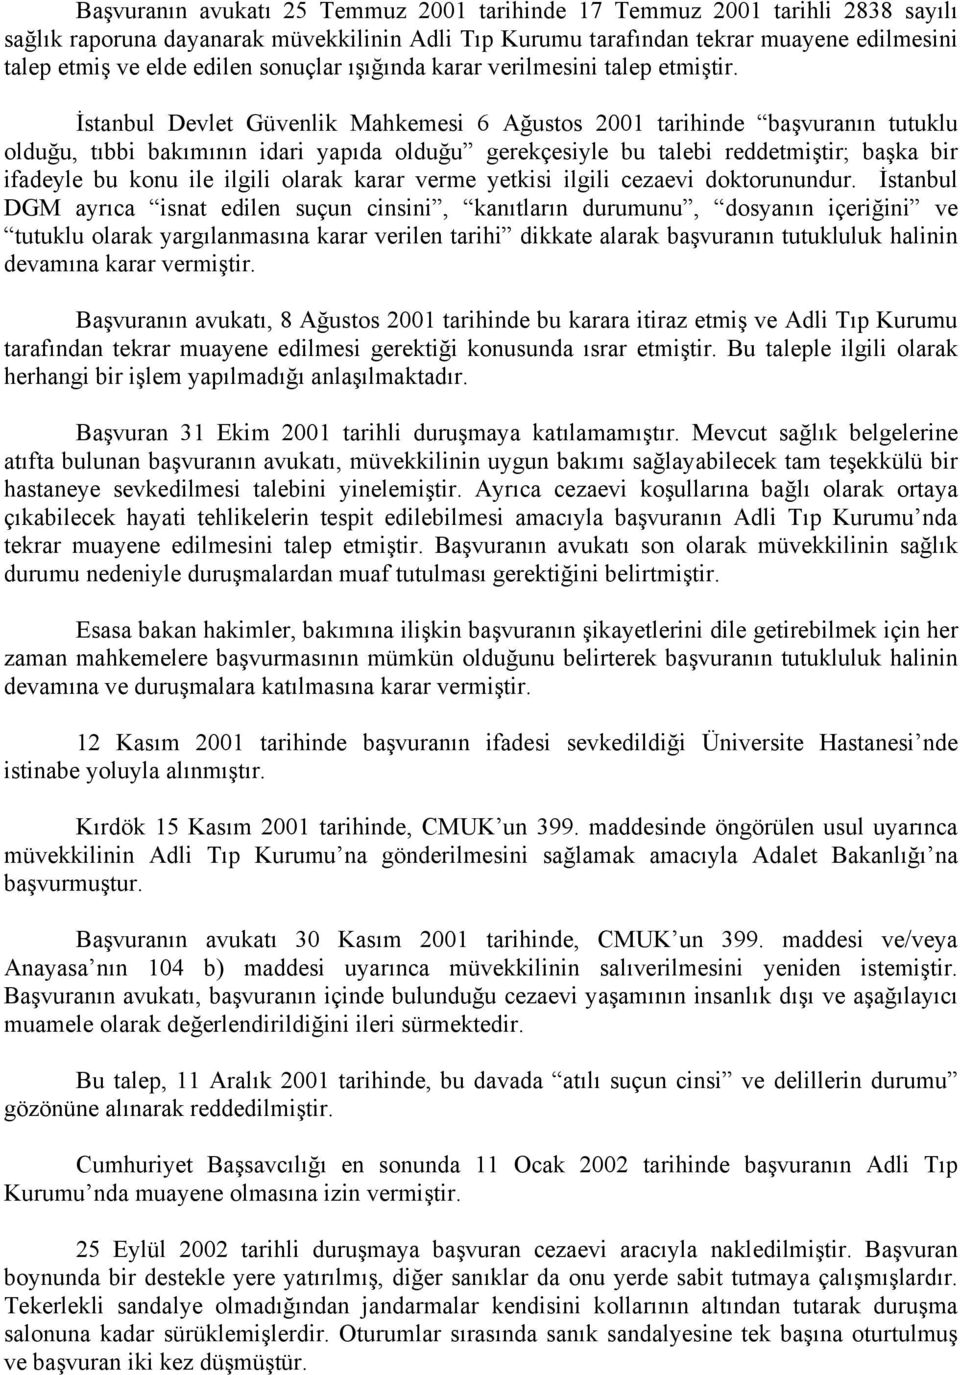 İstanbul Devlet Güvenlik Mahkemesi 6 Ağustos 2001 tarihinde başvuranın tutuklu olduğu, tıbbi bakımının idari yapıda olduğu gerekçesiyle bu talebi reddetmiştir; başka bir ifadeyle bu konu ile ilgili